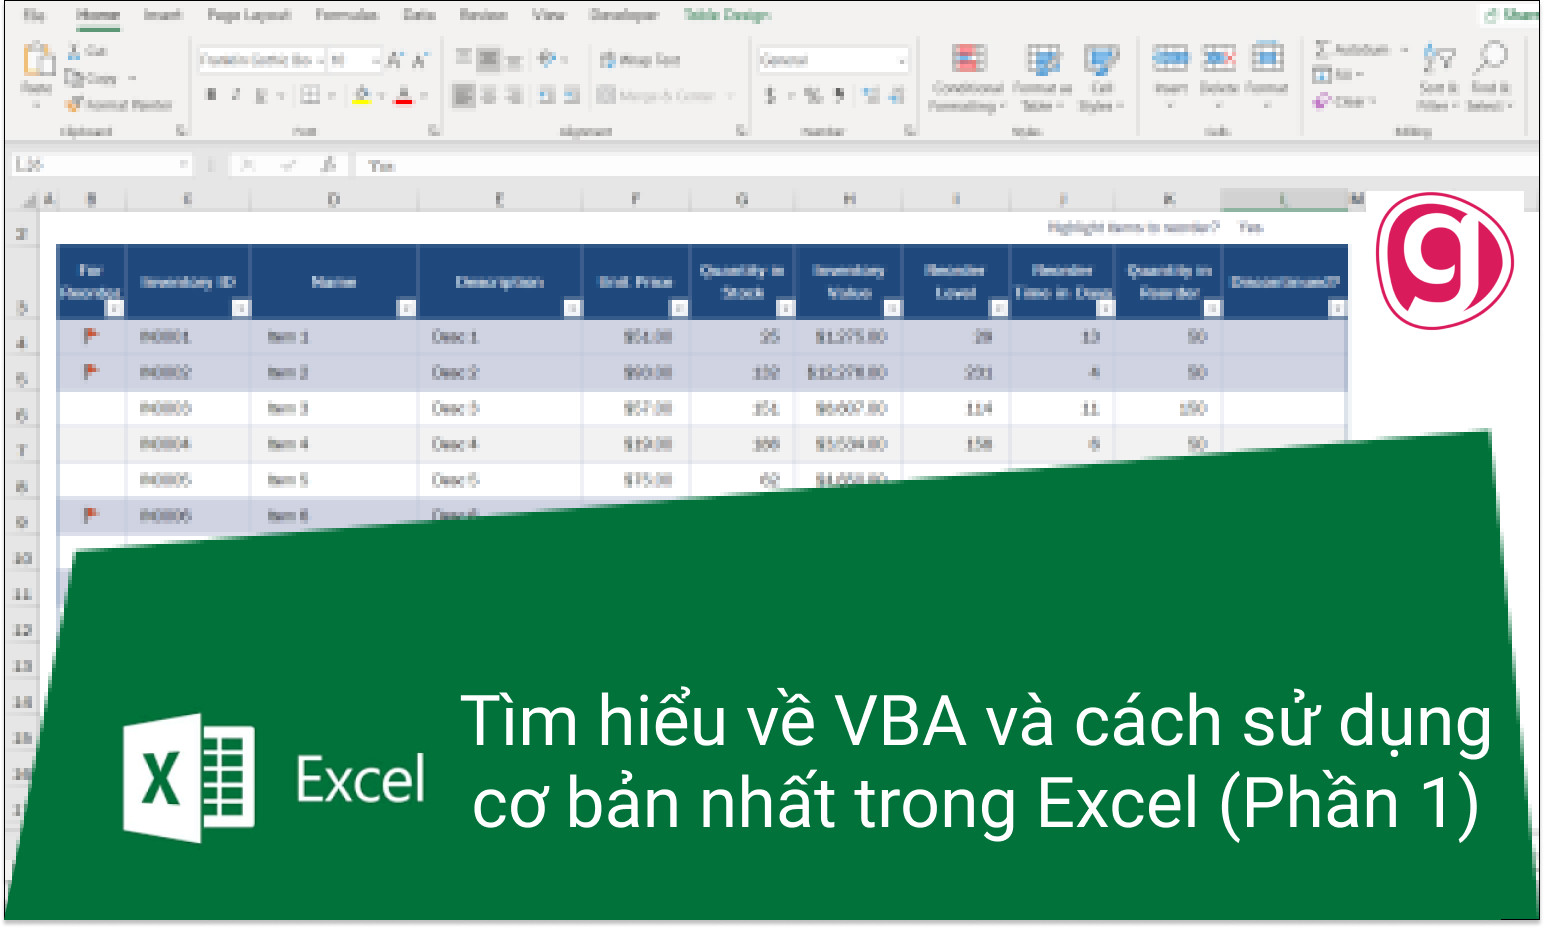 Tìm hiểu về VBA và cách sử dụng cơ bản nhất trong Excel (Phần 1)